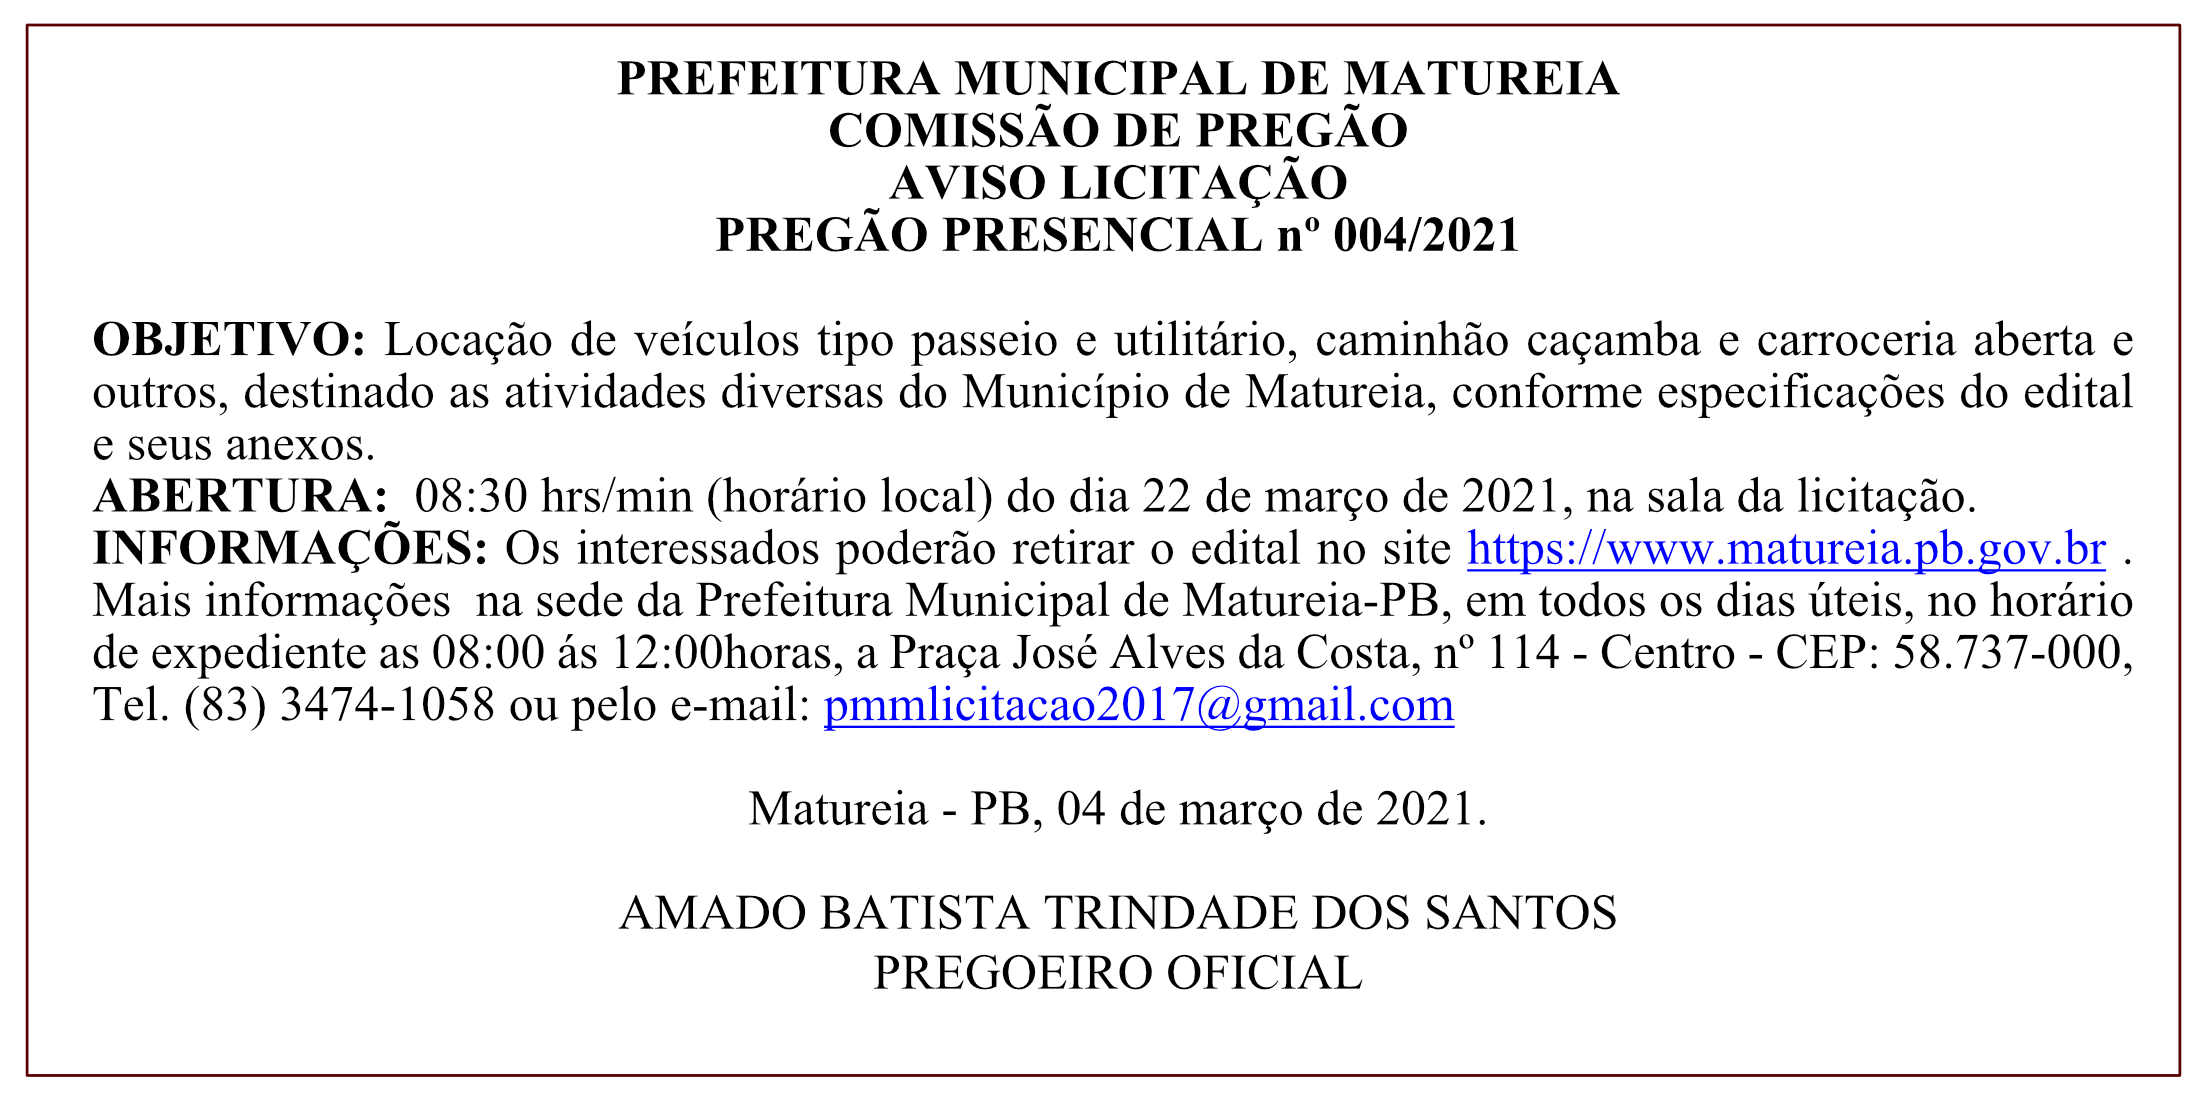 PREFEITURA MUNICIPAL DE MATUREIA – COMISSÃO DE PREGÃO – AVISO LICITAÇÃO – PREGÃO PRESENCIAL Nº 004/2021